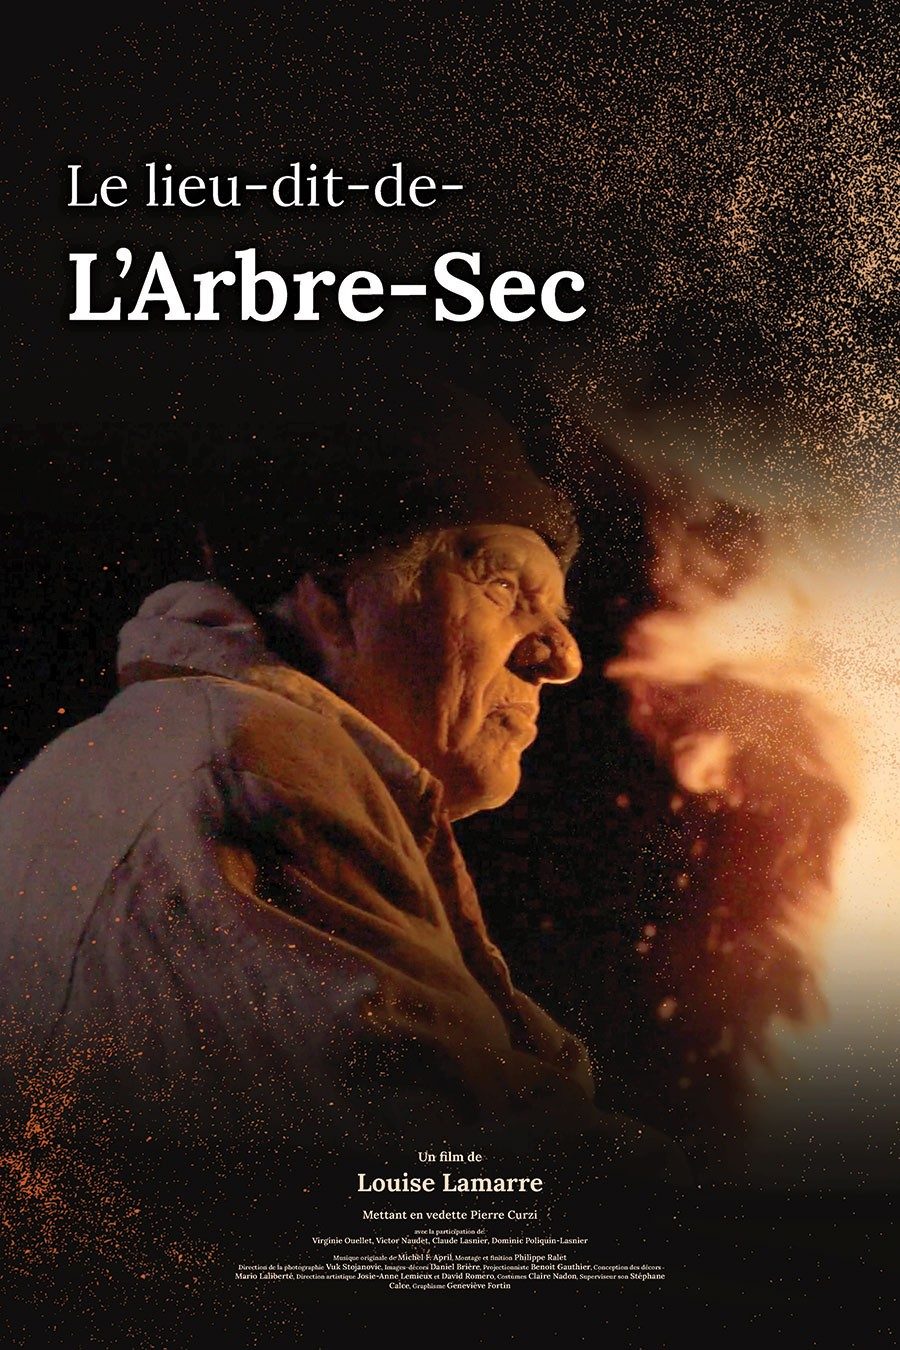 Poster for Louise Lamarre's film Le Lieux-dit-de-l’Arbre-Sec